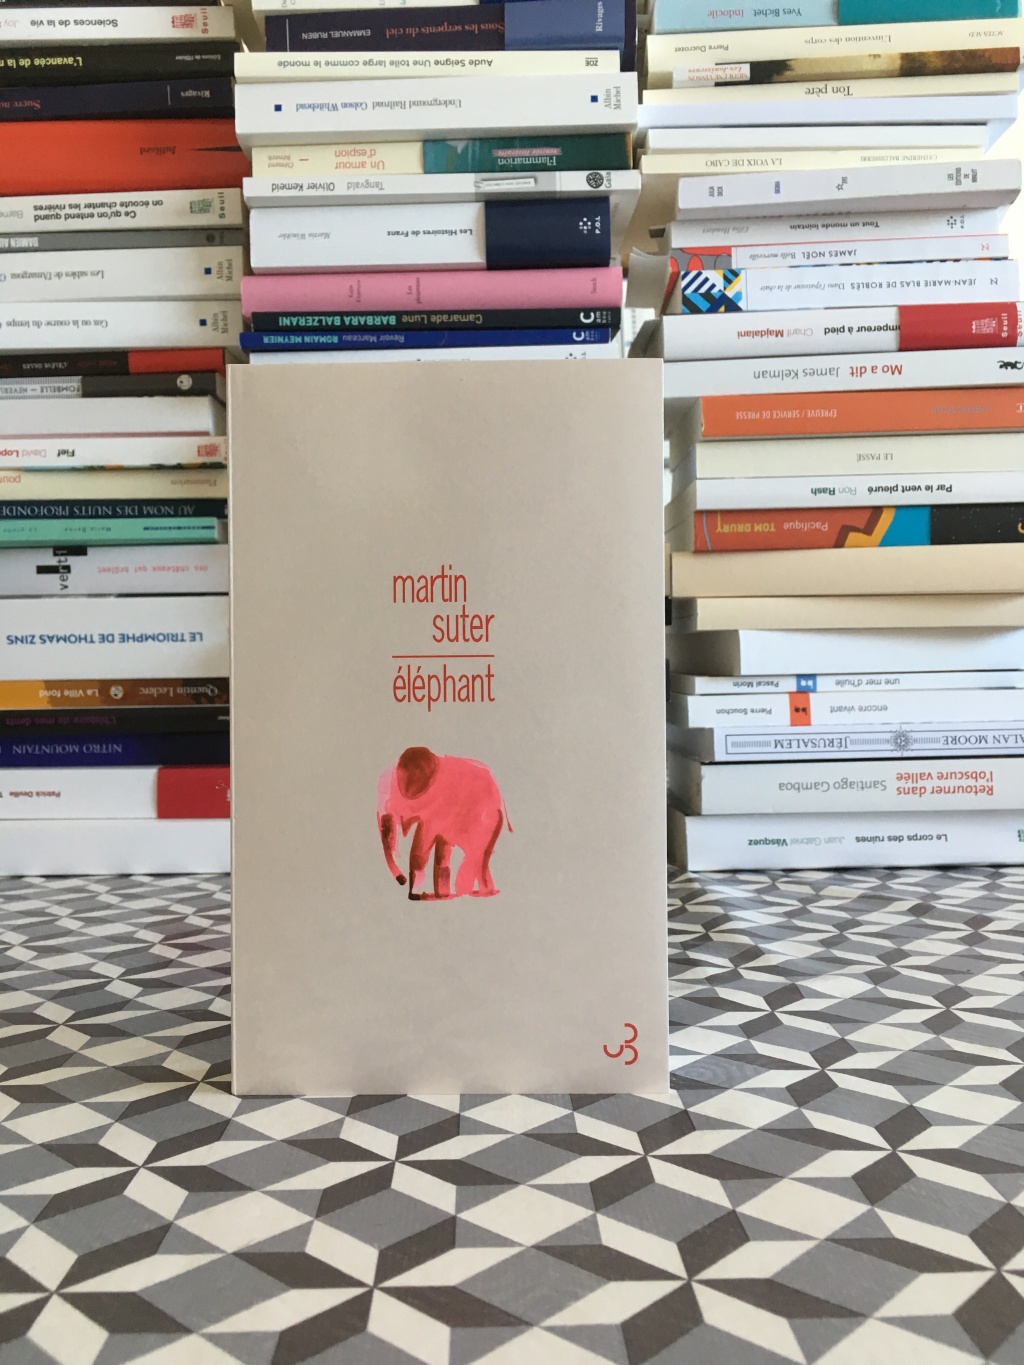 Martin SUTER — Elephant (Bourgois)